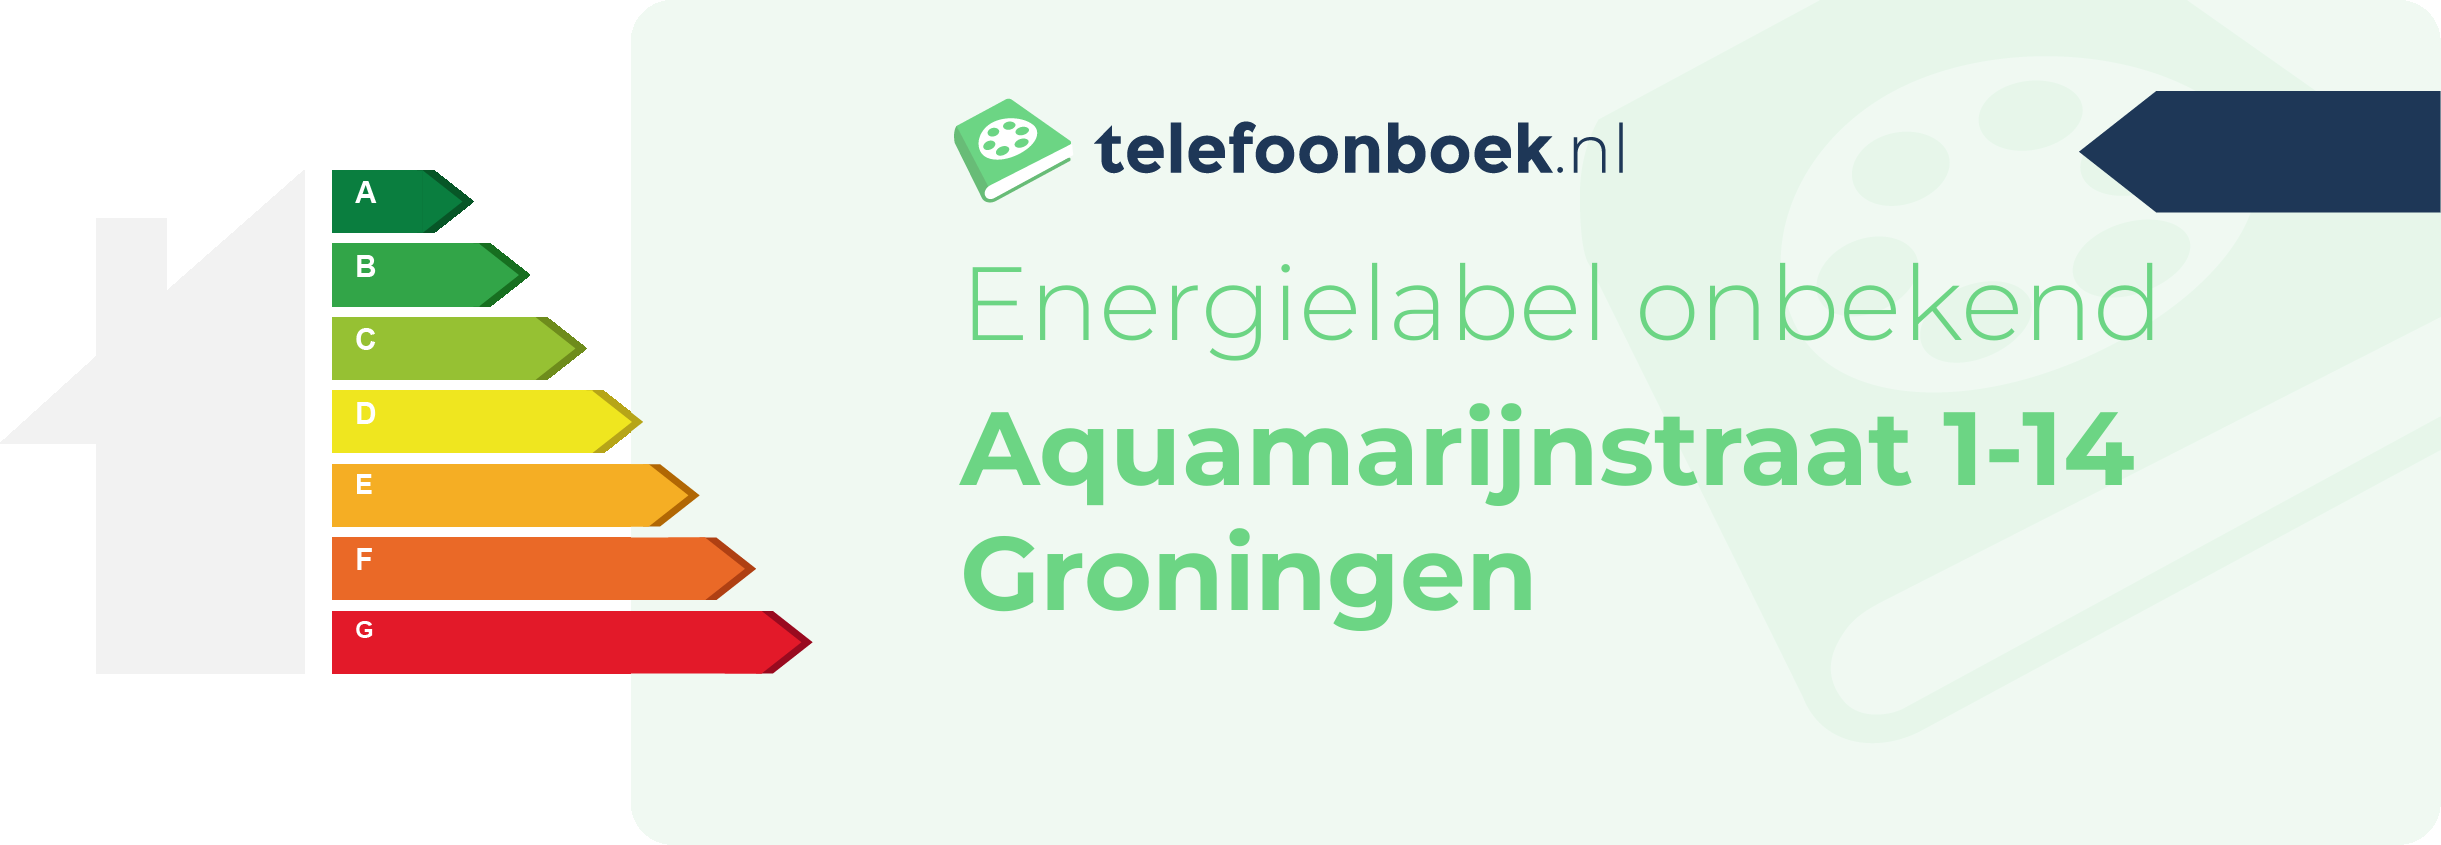 Energielabel Aquamarijnstraat 1-14 Groningen